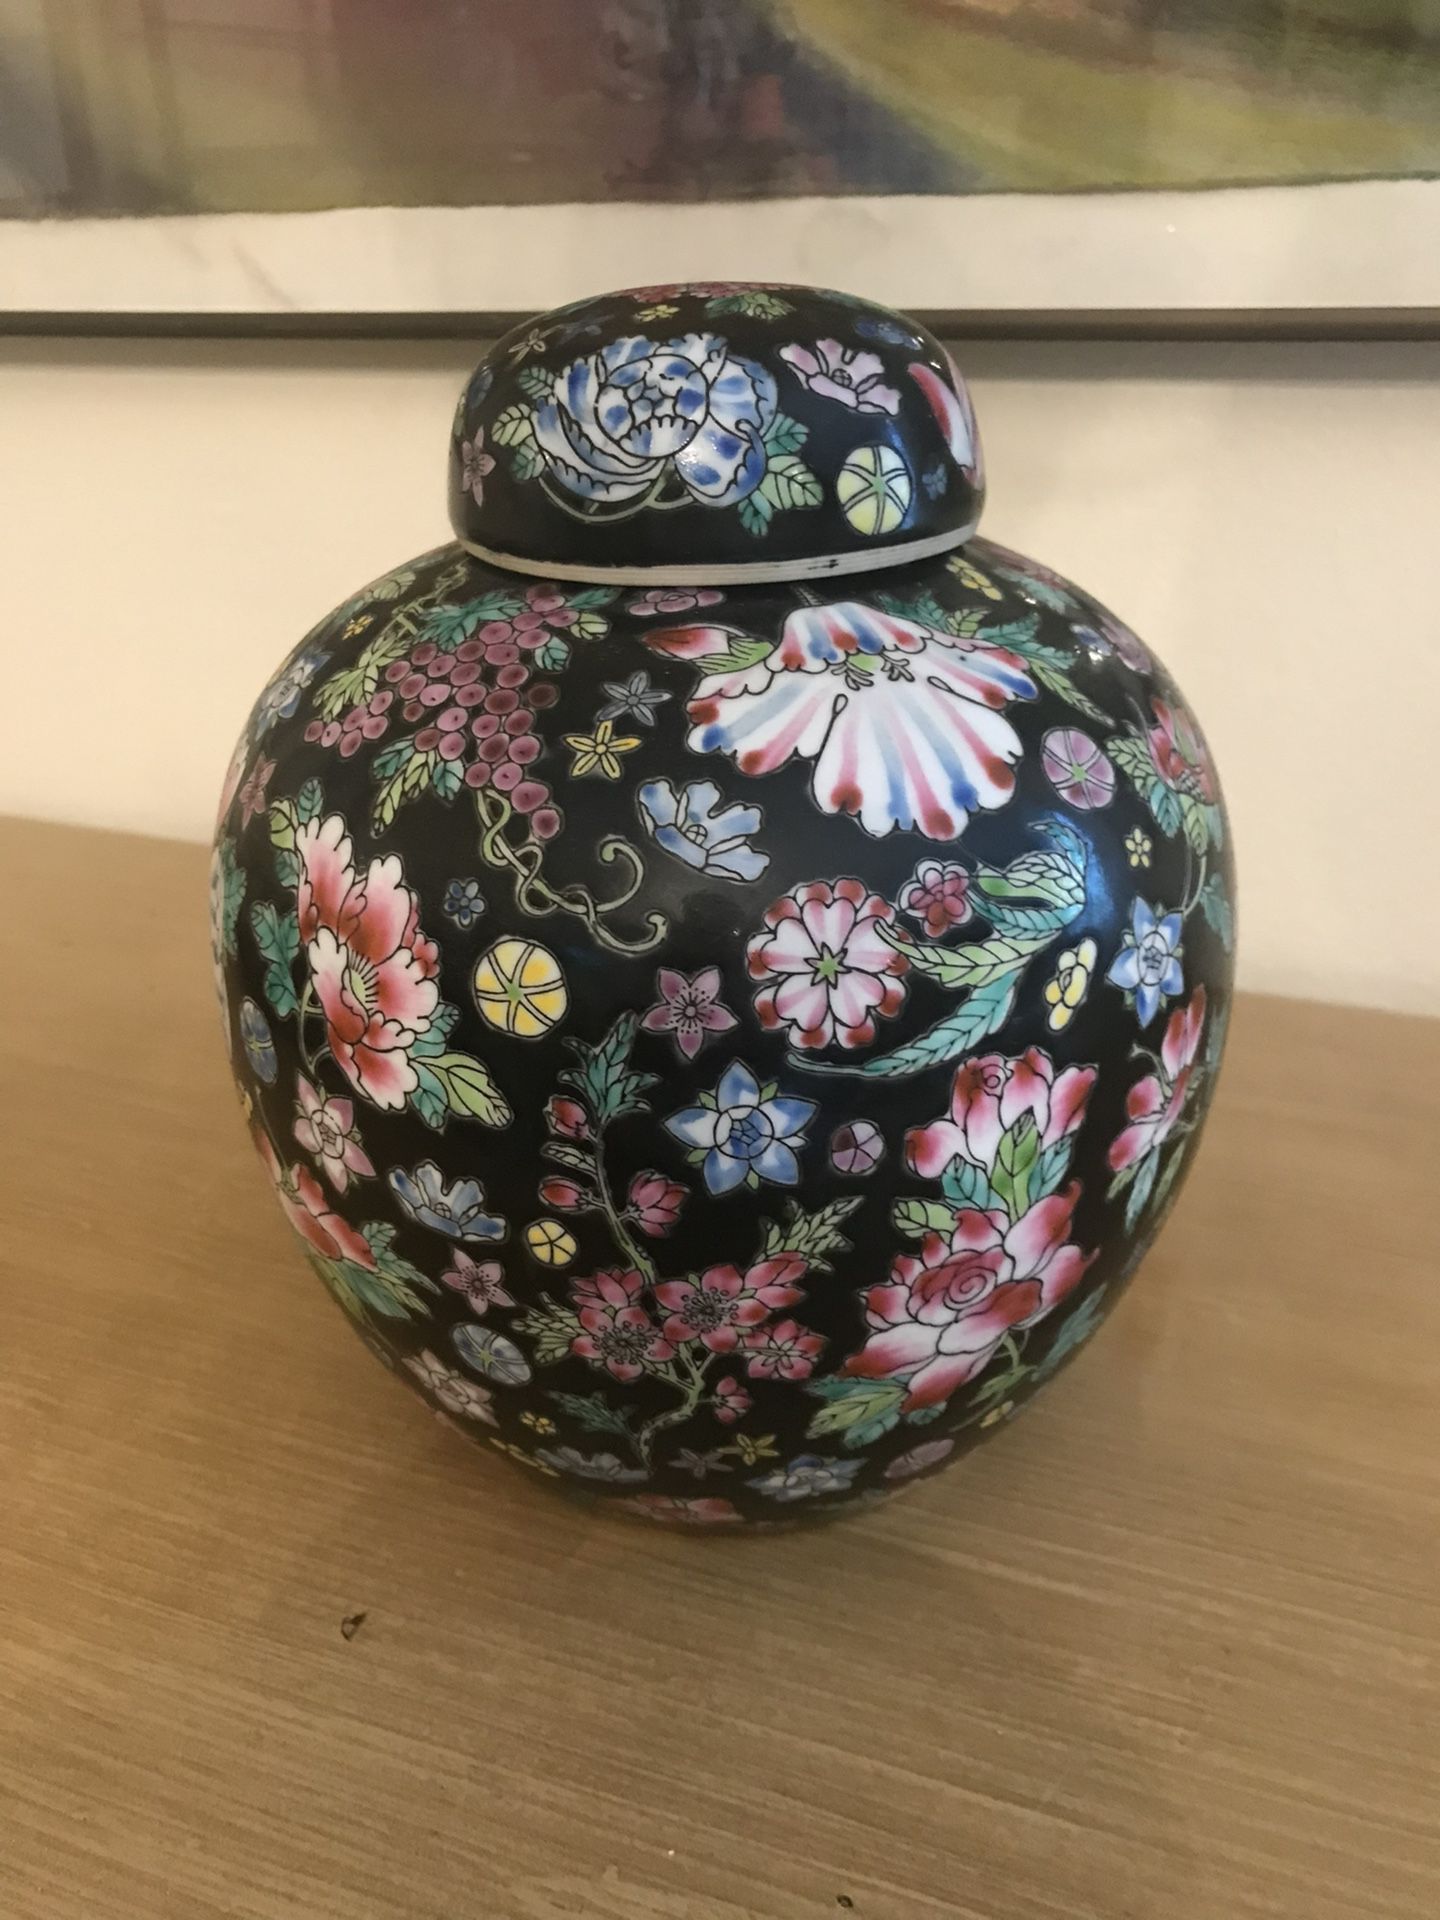 Beautiful & Colorful floral ceramic Ginger Jar